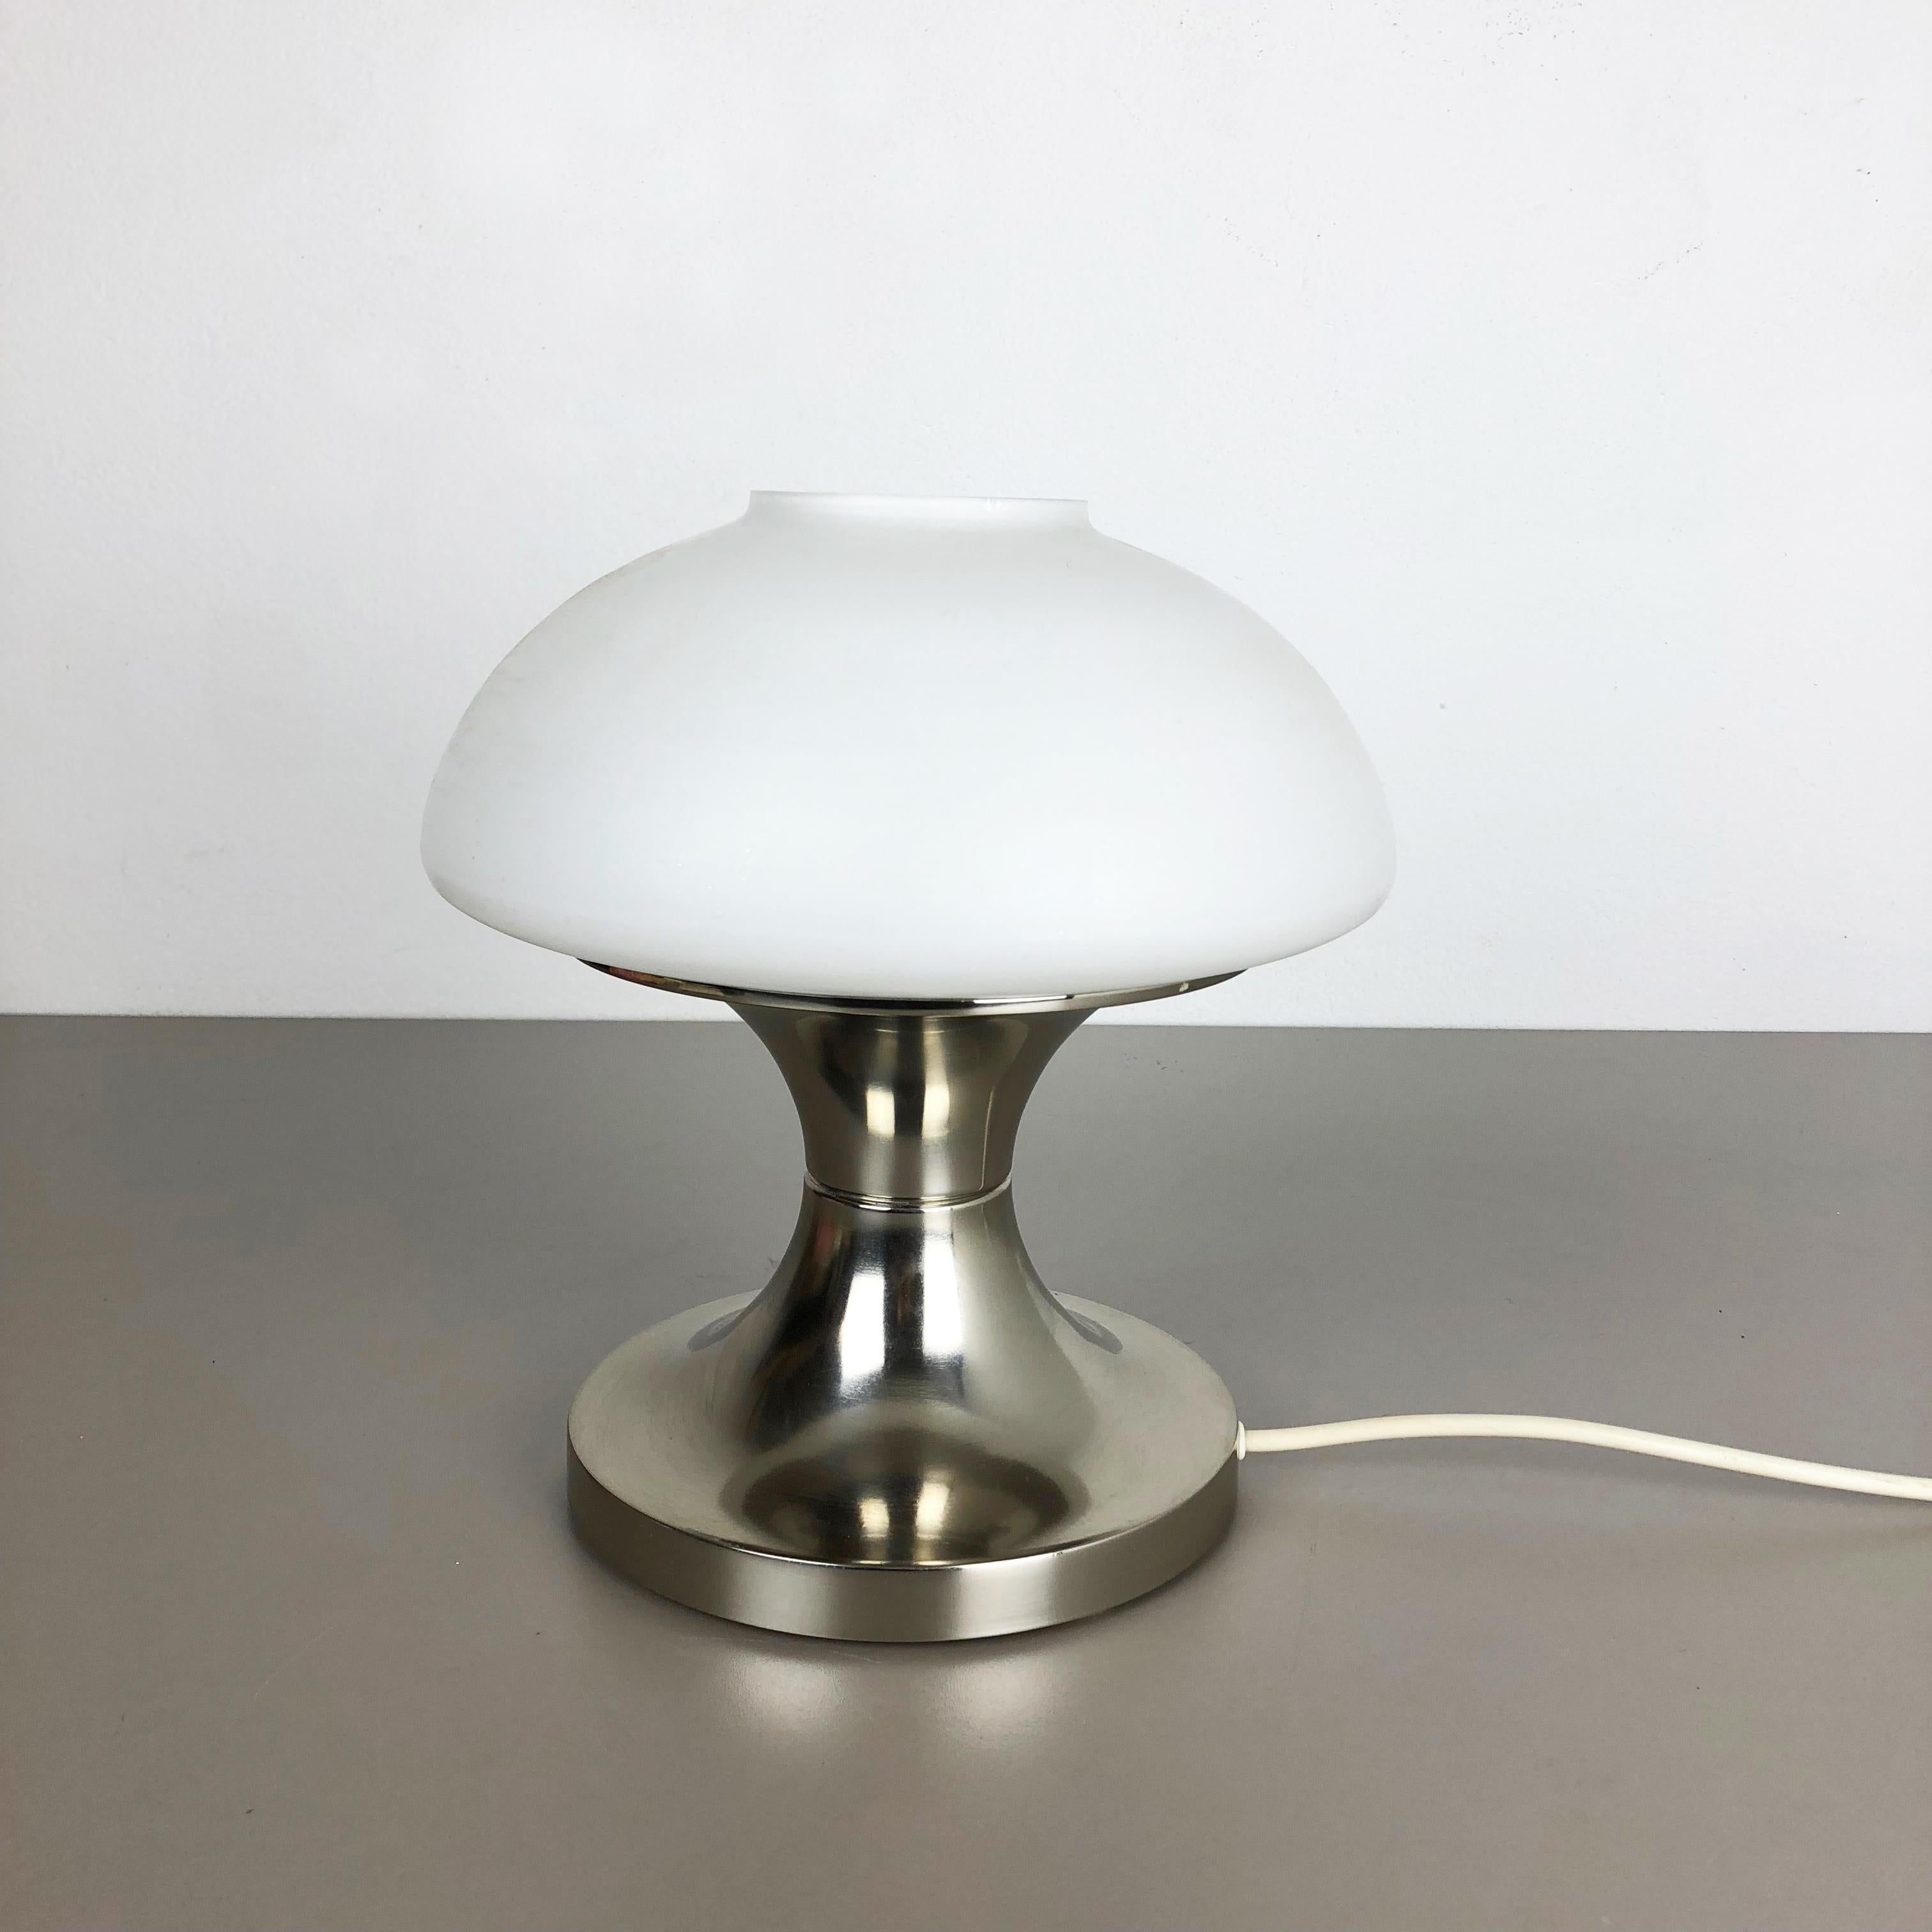 Article :

lampe de table avec abat-jour opale


Origine :

Italie


Décennie :

1970s





Cette lampe vintage originale a été conçue et produite dans les années 1970 en Italie. Elle est fabriquée en métal et en verre opale. La lampe comporte un